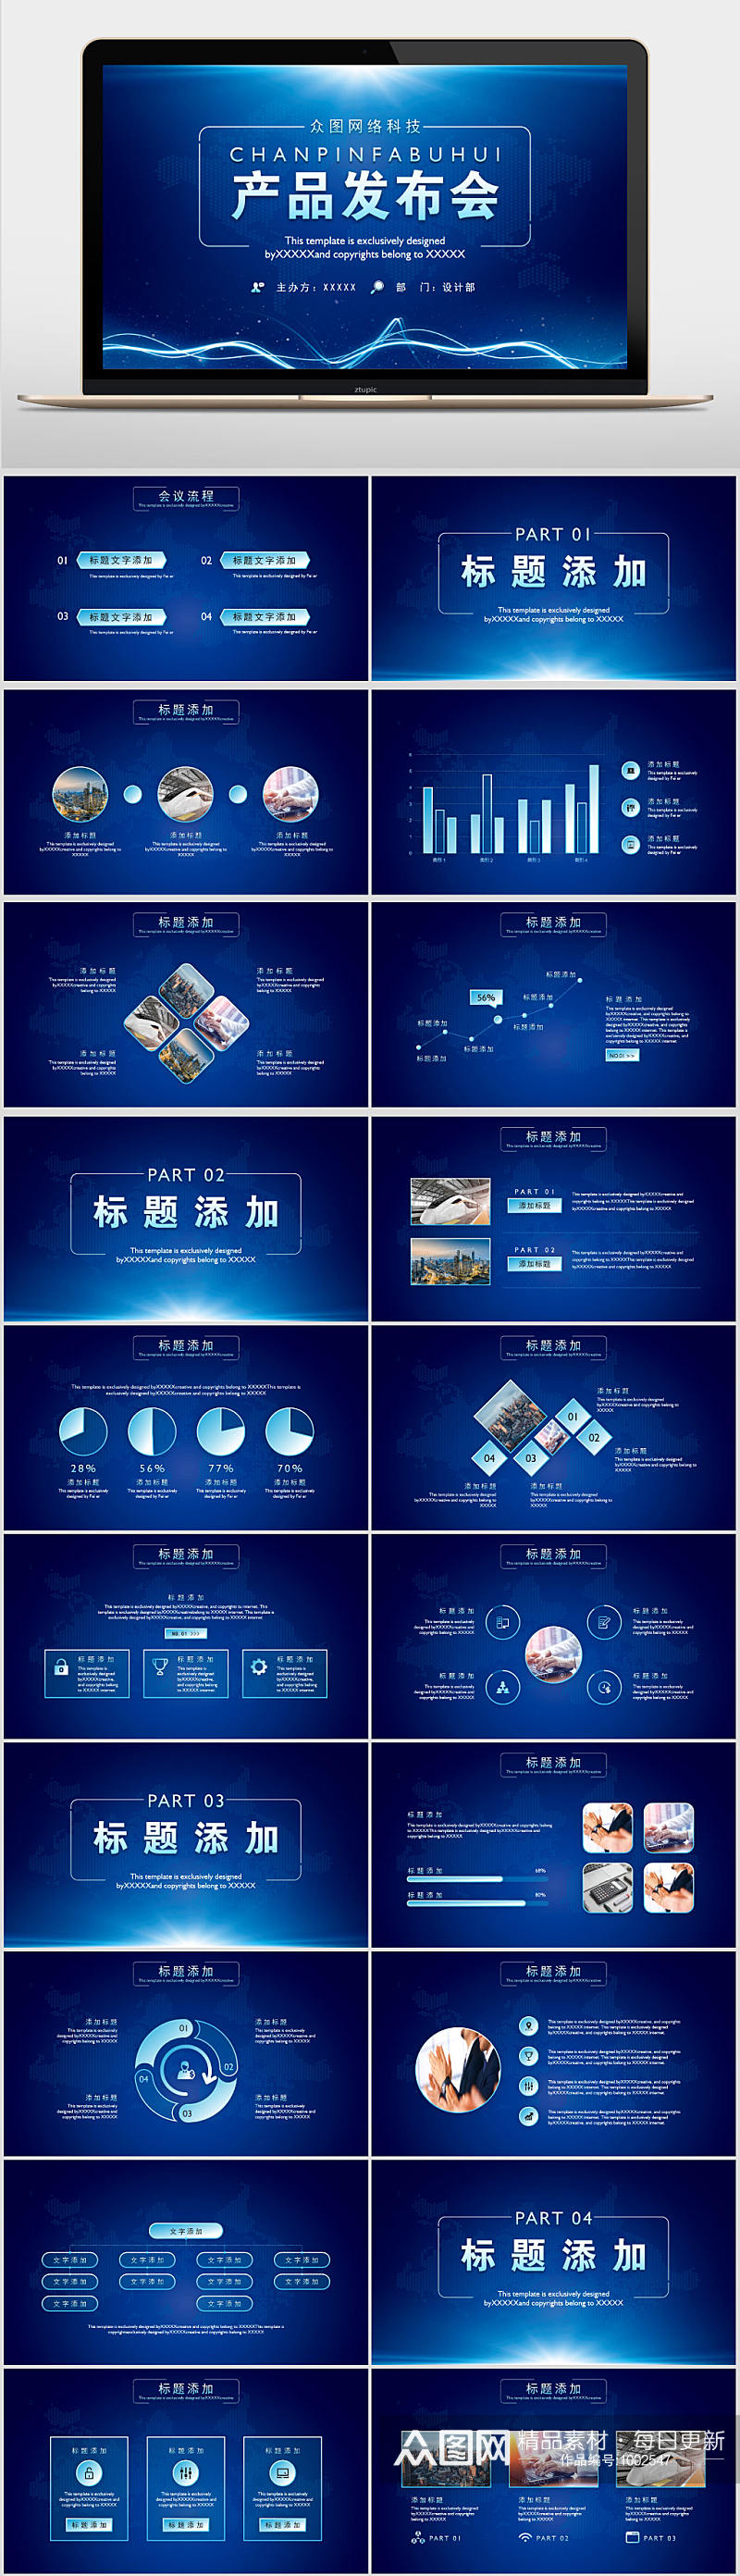 蓝色互联网科技产品发布会PPT模板素材